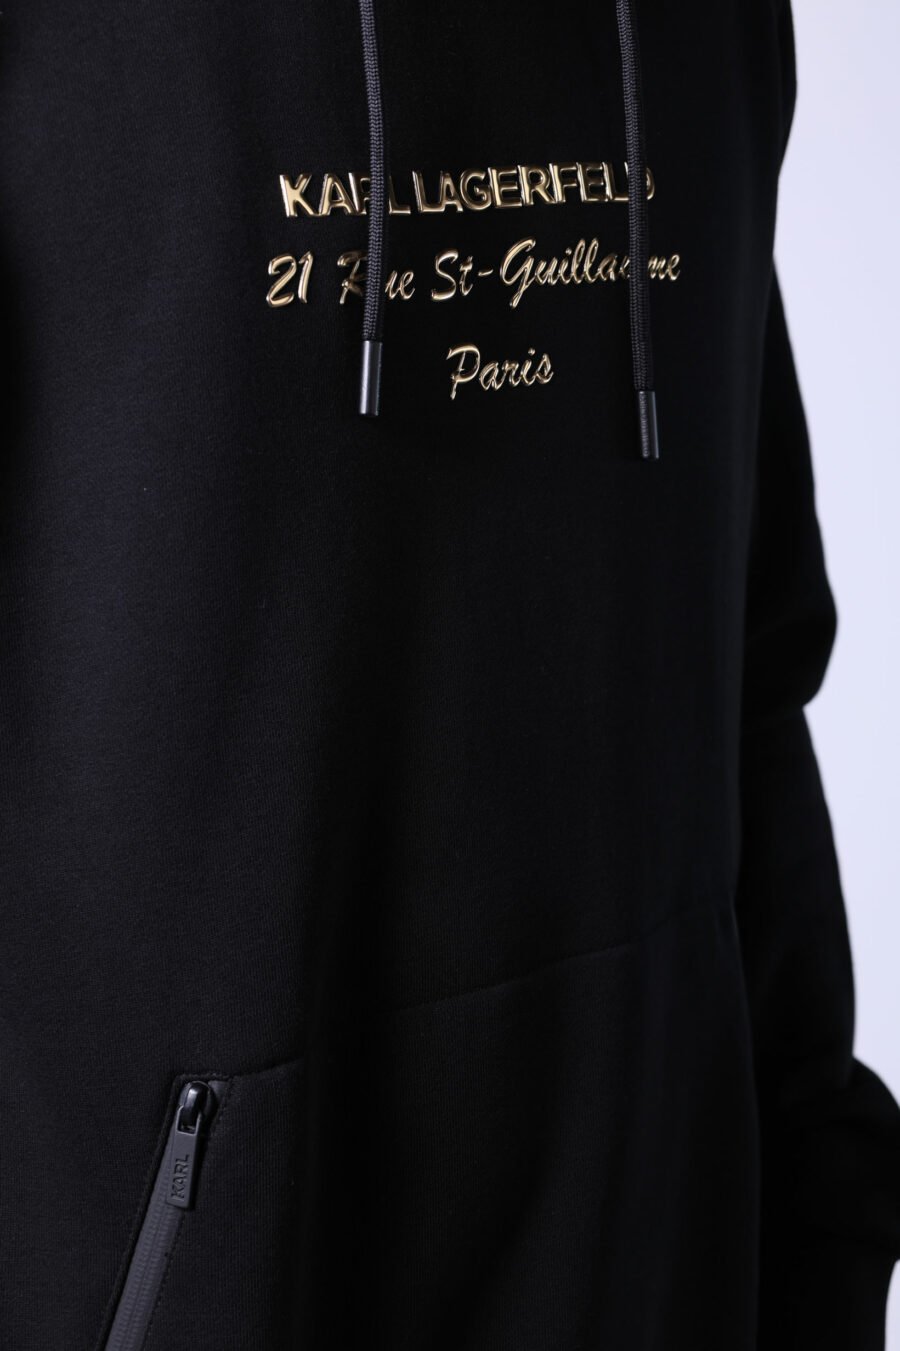 Schwarzes Kapuzensweatshirt mit goldenem Schriftzug "rue st guillaume" Logo - Untitled Catalog 05729